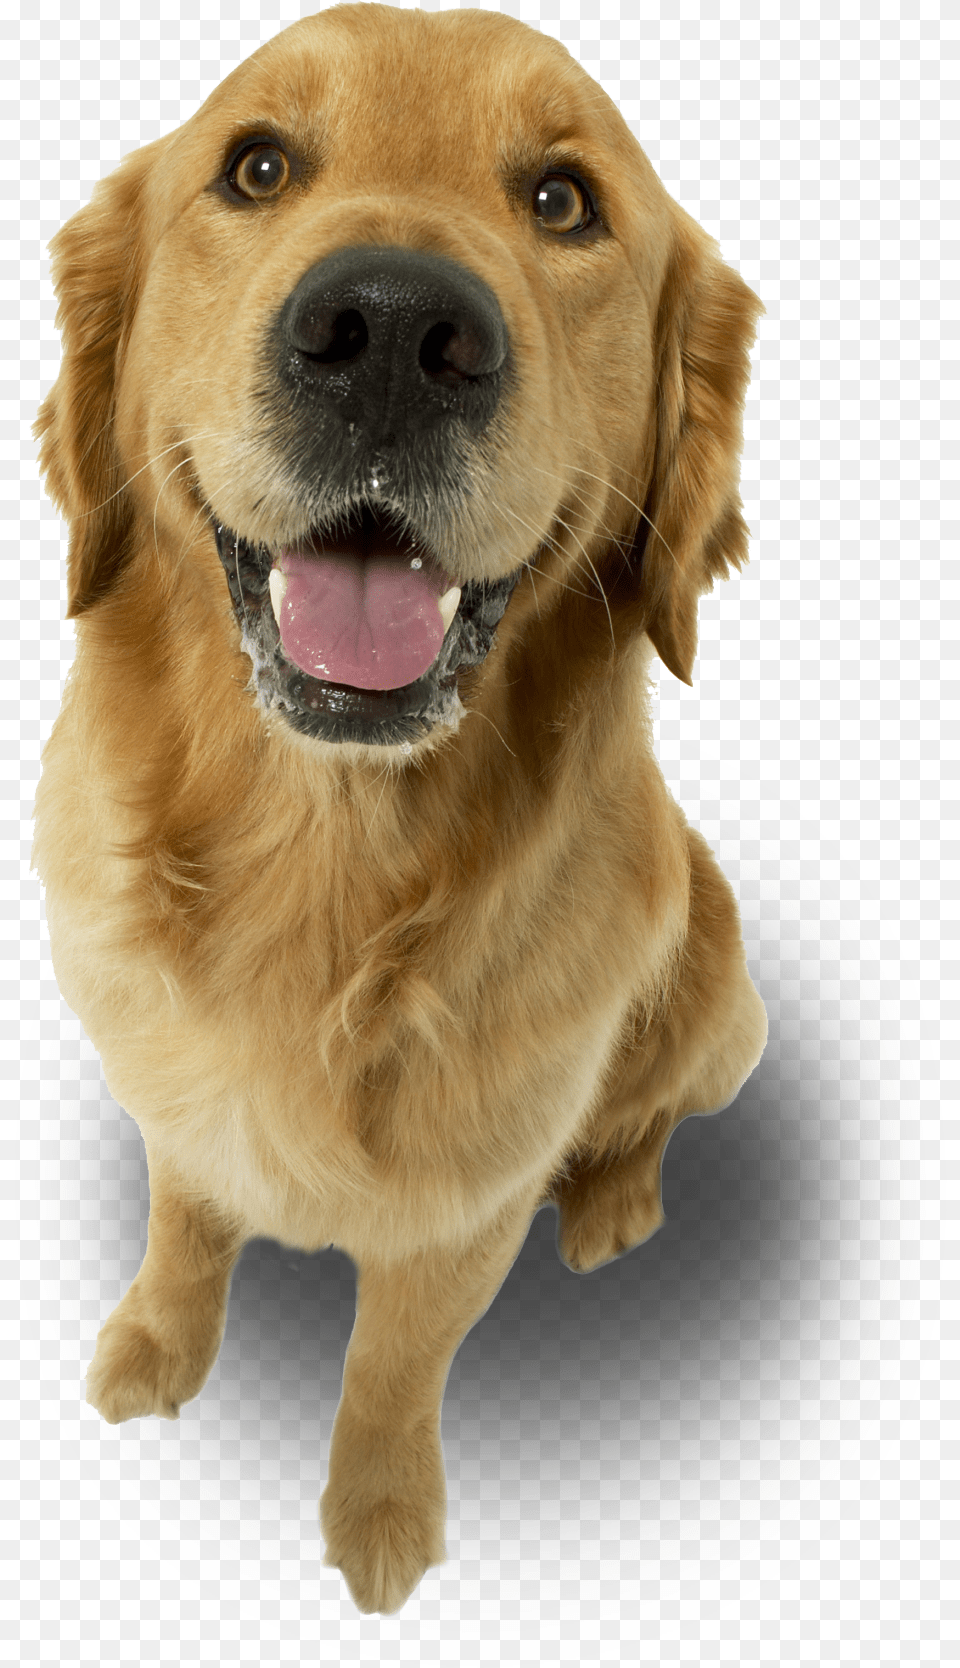 Dog Love My Golden Retriever Ornament Oval Full Size Imagens De Animais Para Final De Slide, Animal, Canine, Golden Retriever, Mammal Free Transparent Png